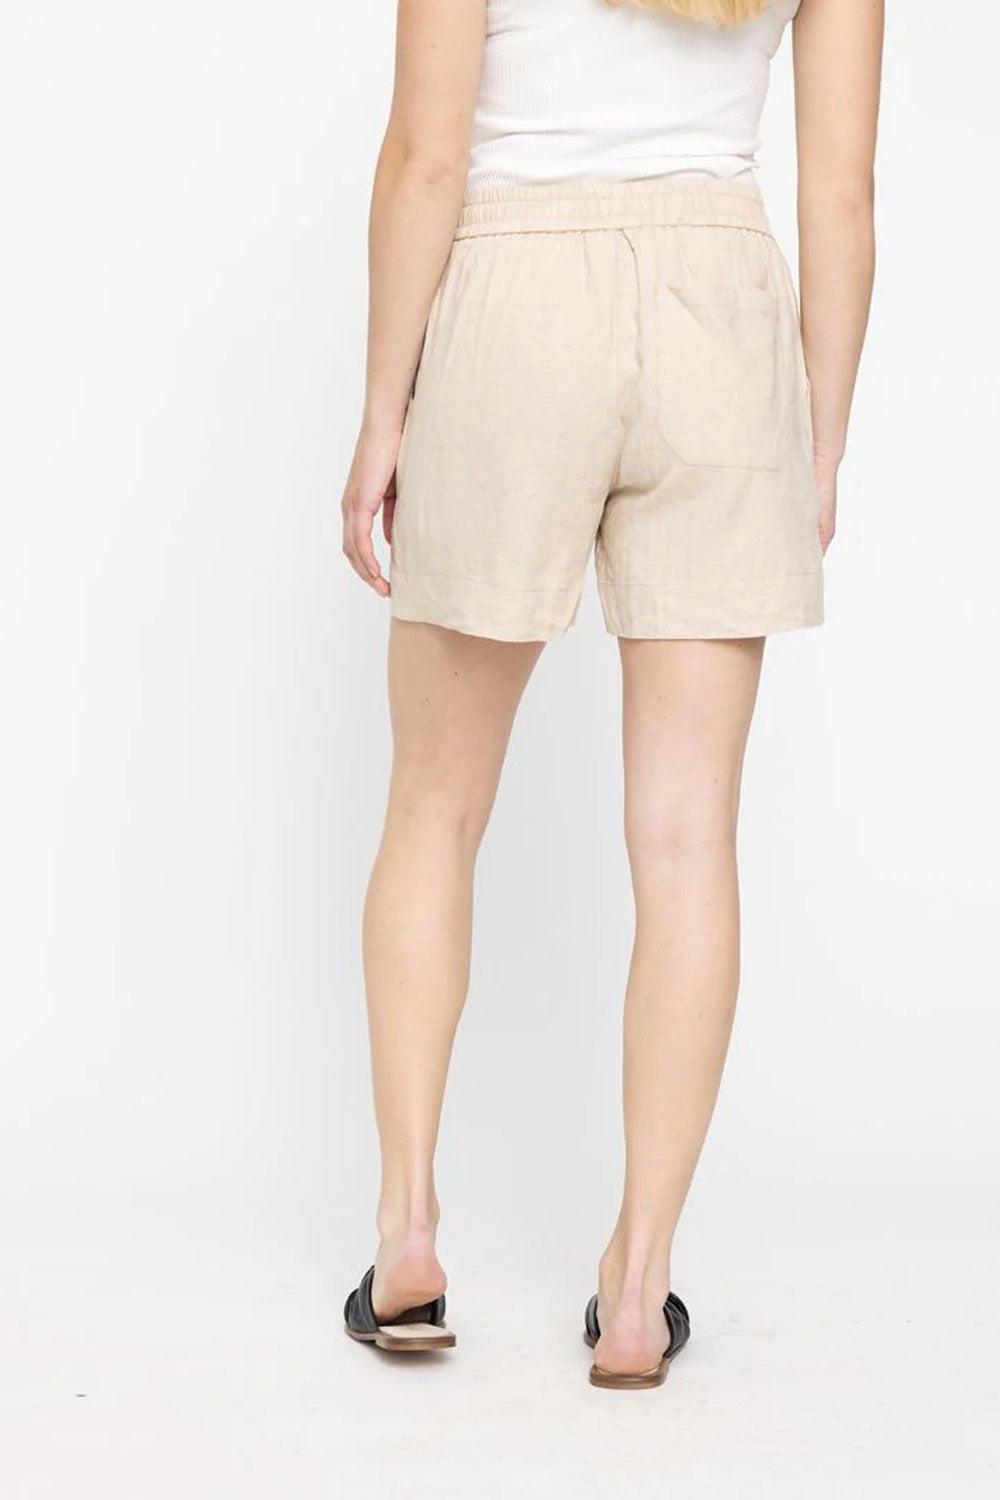 Linea shorts 763 Natural